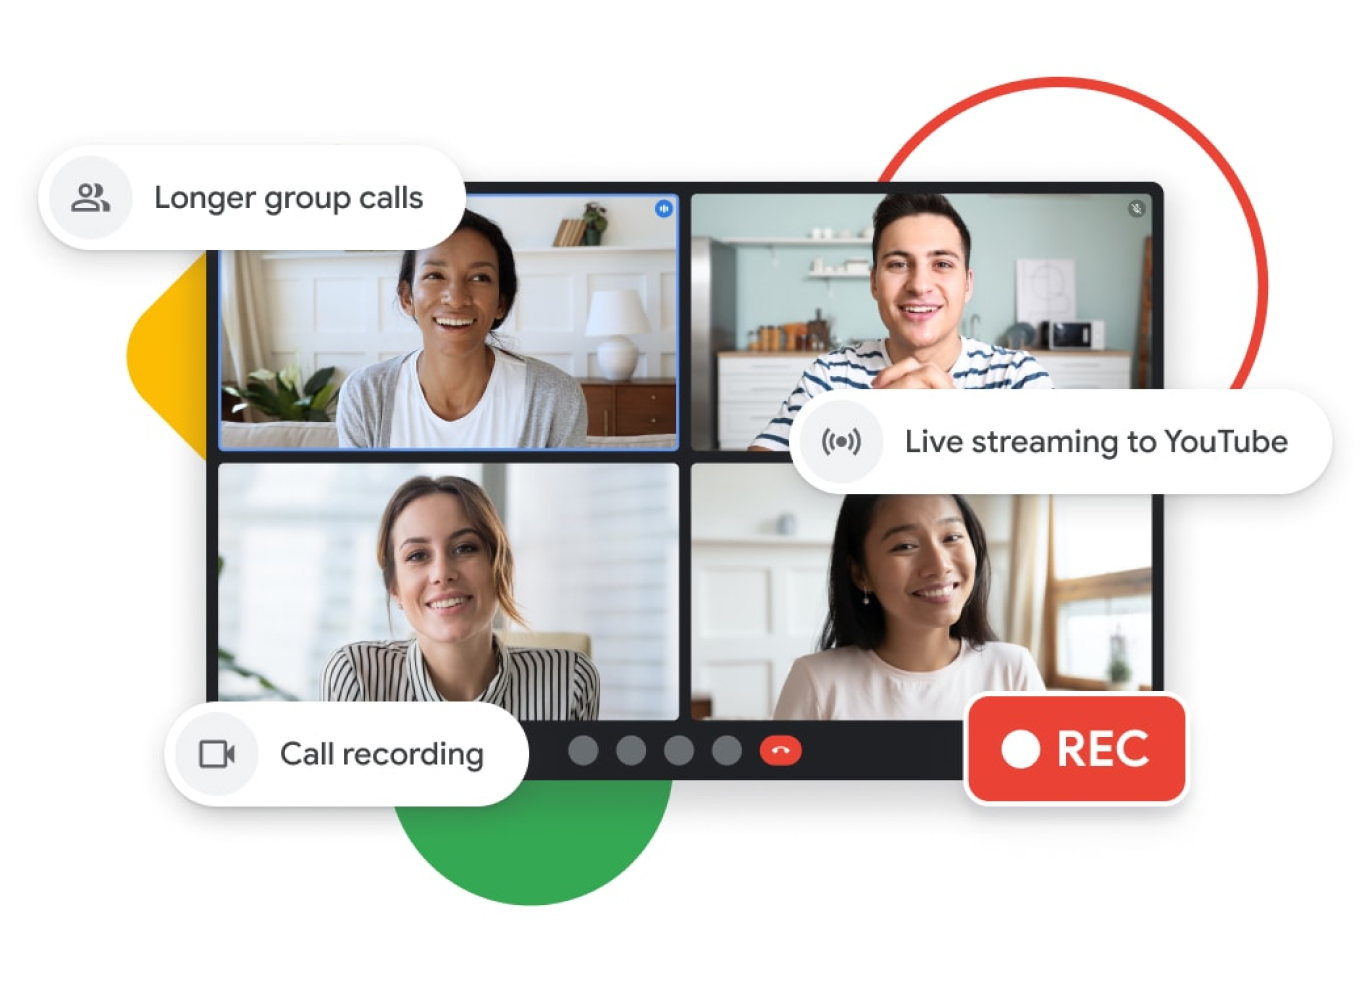 Ilustração de uma chamada do Google Meet com chamadas em grupo mais longas, transmissão ao vivo no YouTube e recursos de gravação